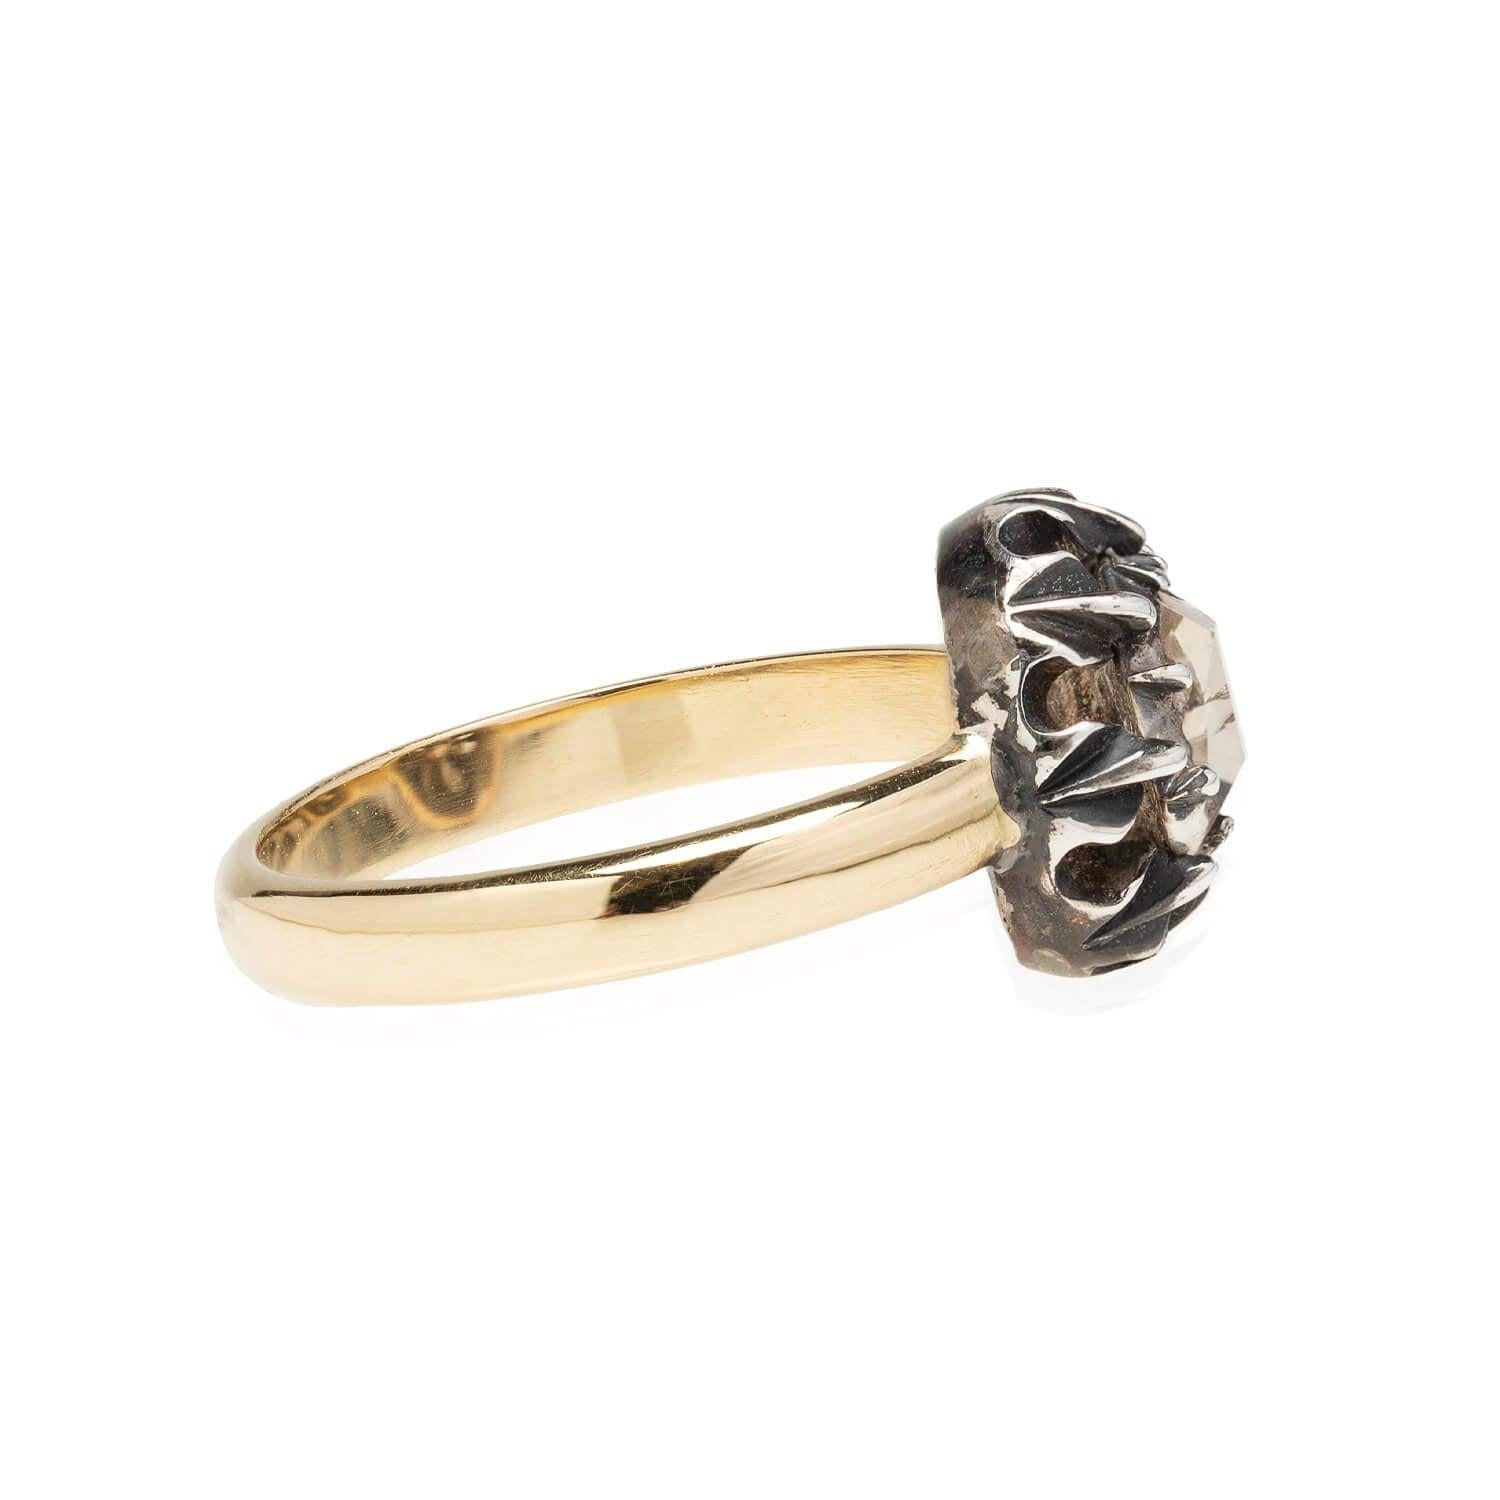 Ein interessanter Diamantring aus der viktorianischen Ära (ca. 1850er Jahre)! Dieser Ring aus 18-karätigem Gelbgold und wunderschön patiniertem Sterlingsilber ziert ein einzigartiger Diamant im Tafelschliff in einer geschlossenen Ringfassung. Der